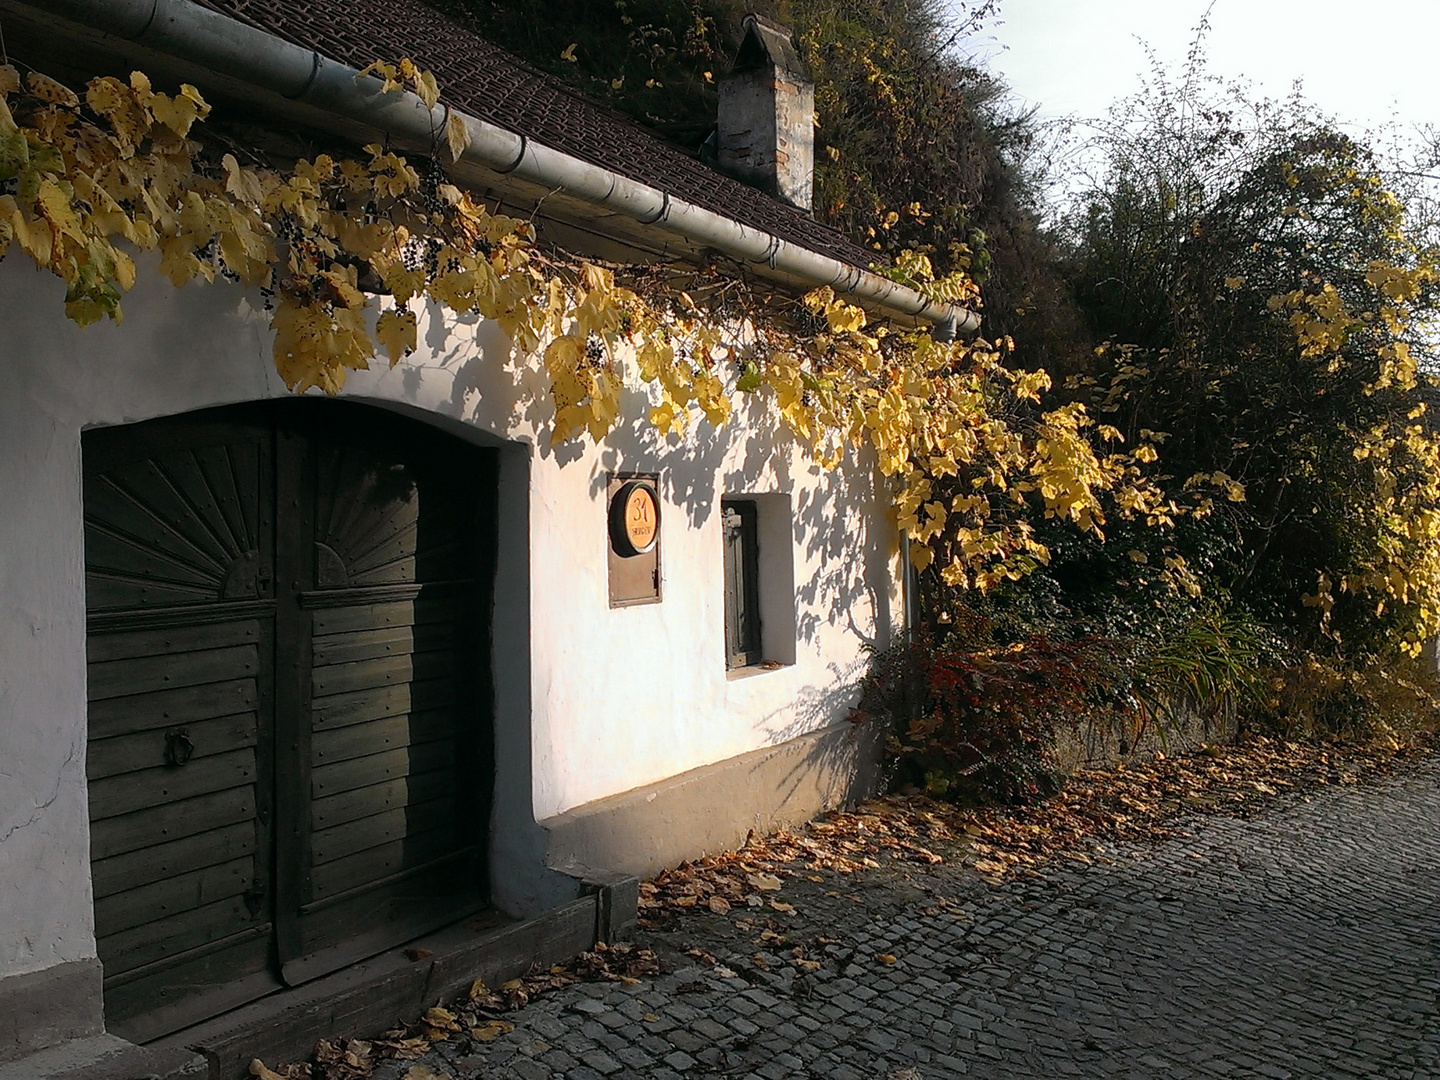 Spätherbst Kellergasse in Rohrendorf bei Krems, Niederösterreich